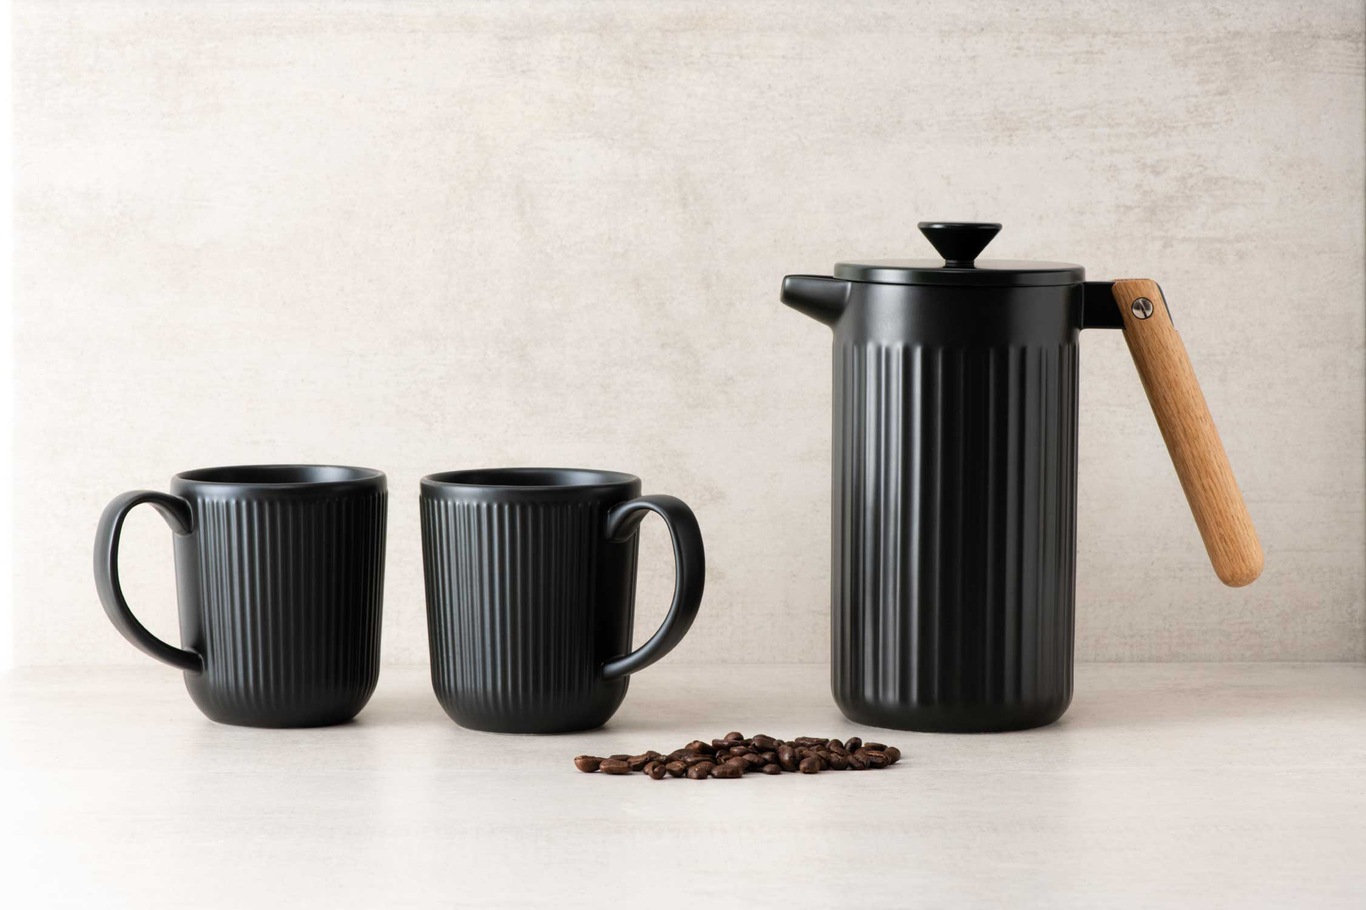 https://royaldesign.com/image/2/bodum-douro-mug-with-handle-2-pack-6?w=800&quality=80